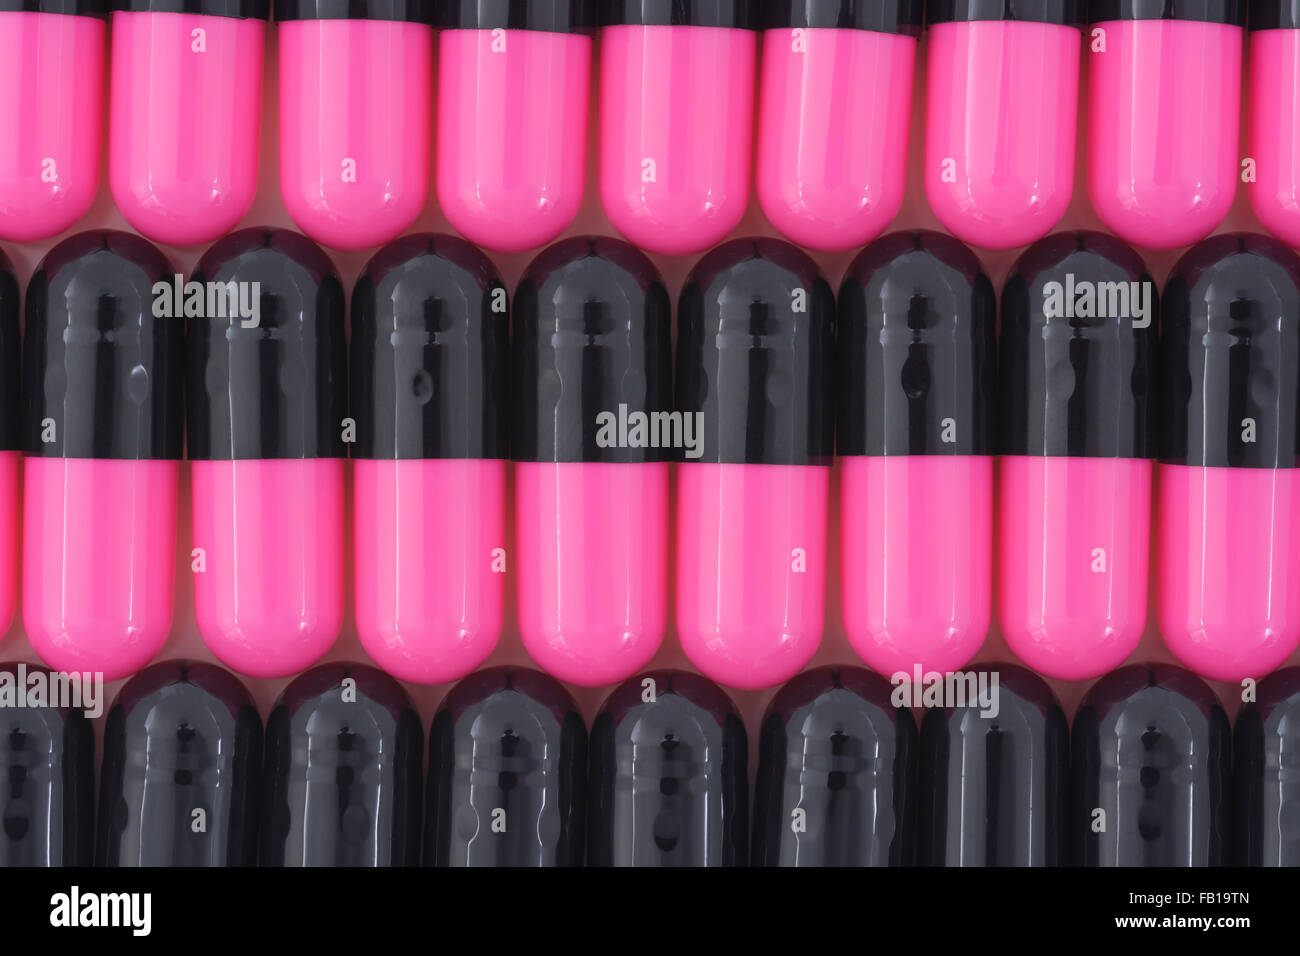 Primer plano de pastillas - forma de cápsula hecha de gelatina. Pastillas rosadas y negras. Metáfora tomando a las compañías farmacéuticas estadounidenses sobre los altos precios de los medicamentos, ensayos de drogas. Foto de stock